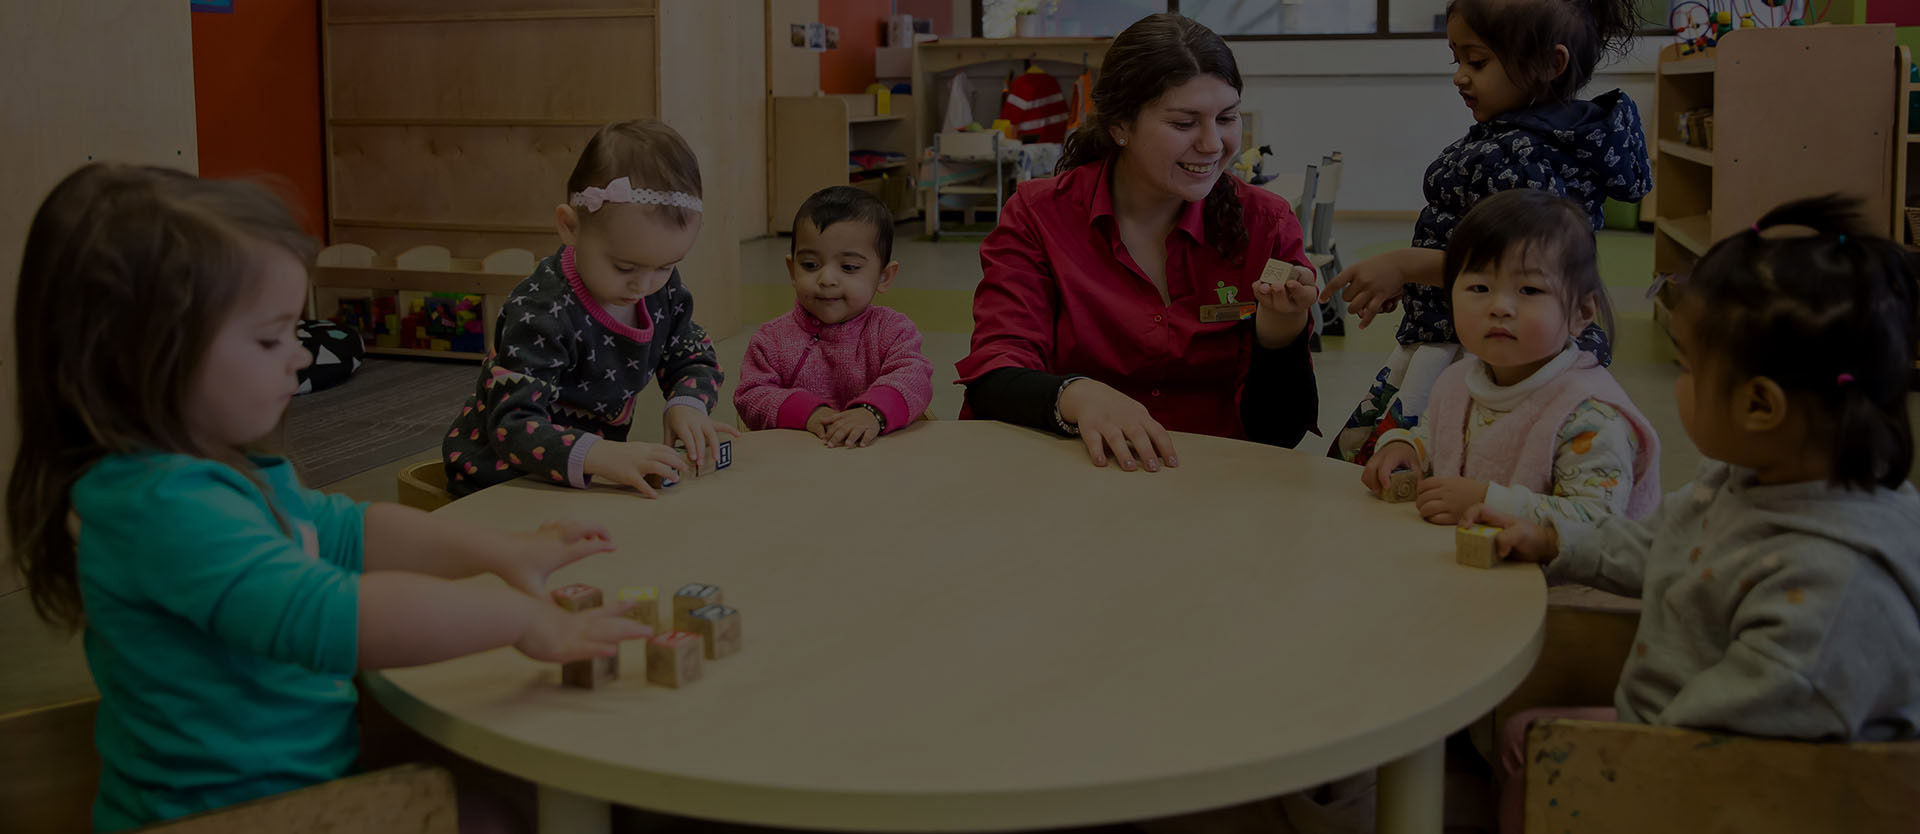 Reggio Emilia Childcare Centres | Enquire Now